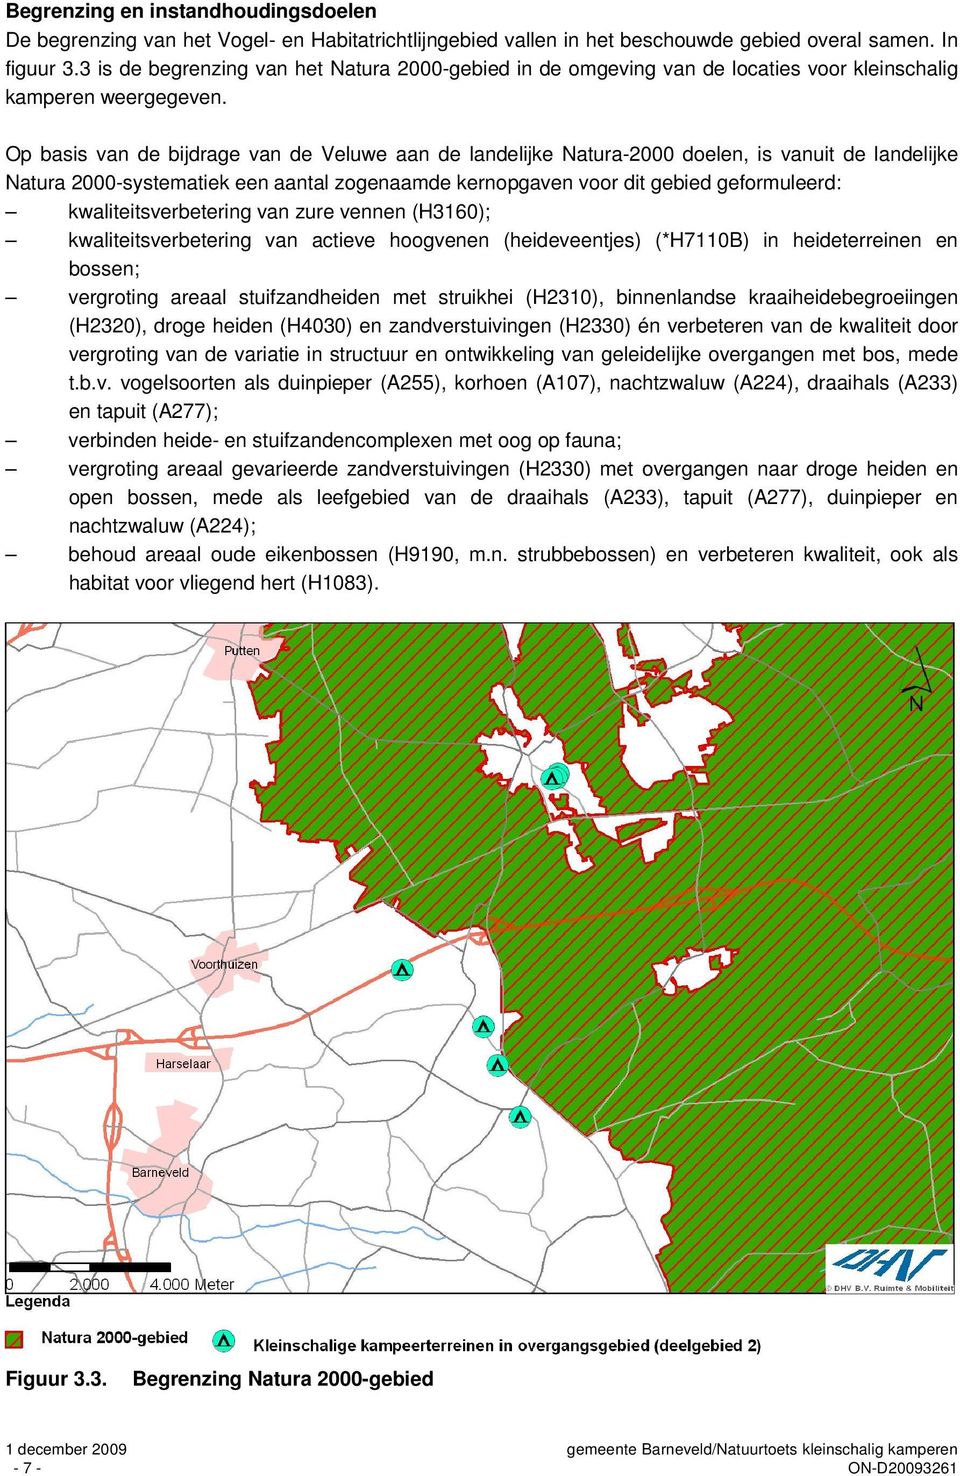 Op basis van de bijdrage van de Veluwe aan de landelijke Natura-2000 doelen, is vanuit de landelijke Natura 2000-systematiek een aantal zogenaamde kernopgaven voor dit gebied geformuleerd: